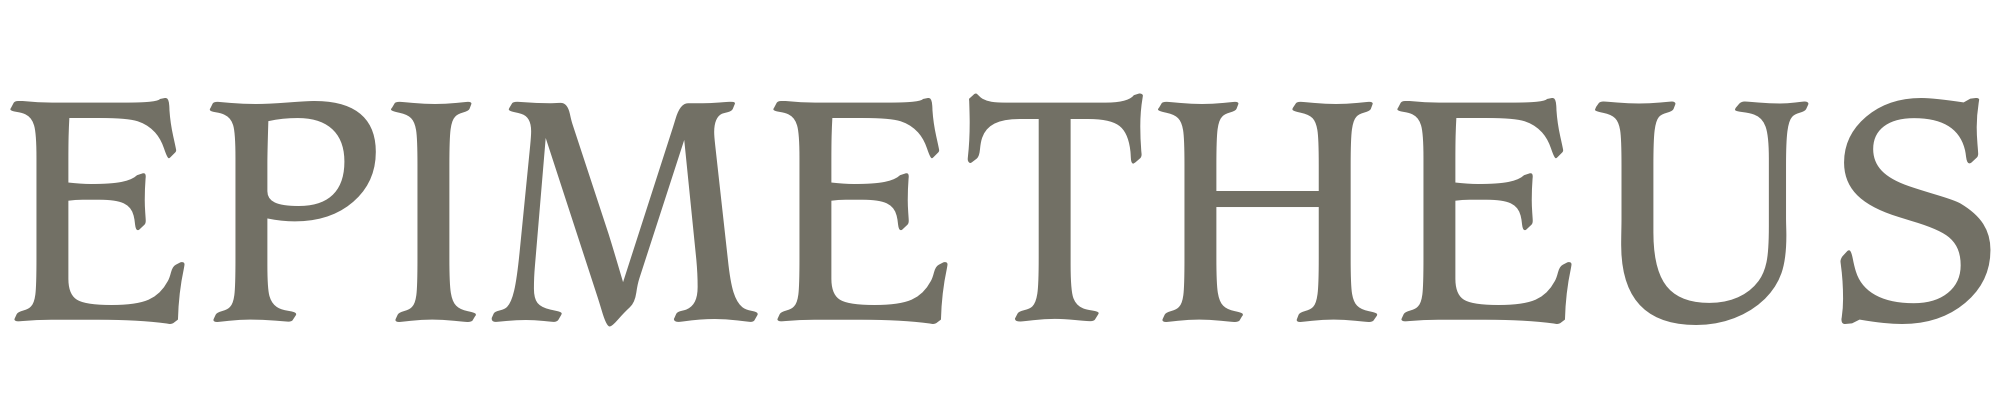 Epimetheus Logo - Epimetheus - Name's Meaning of Epimetheus